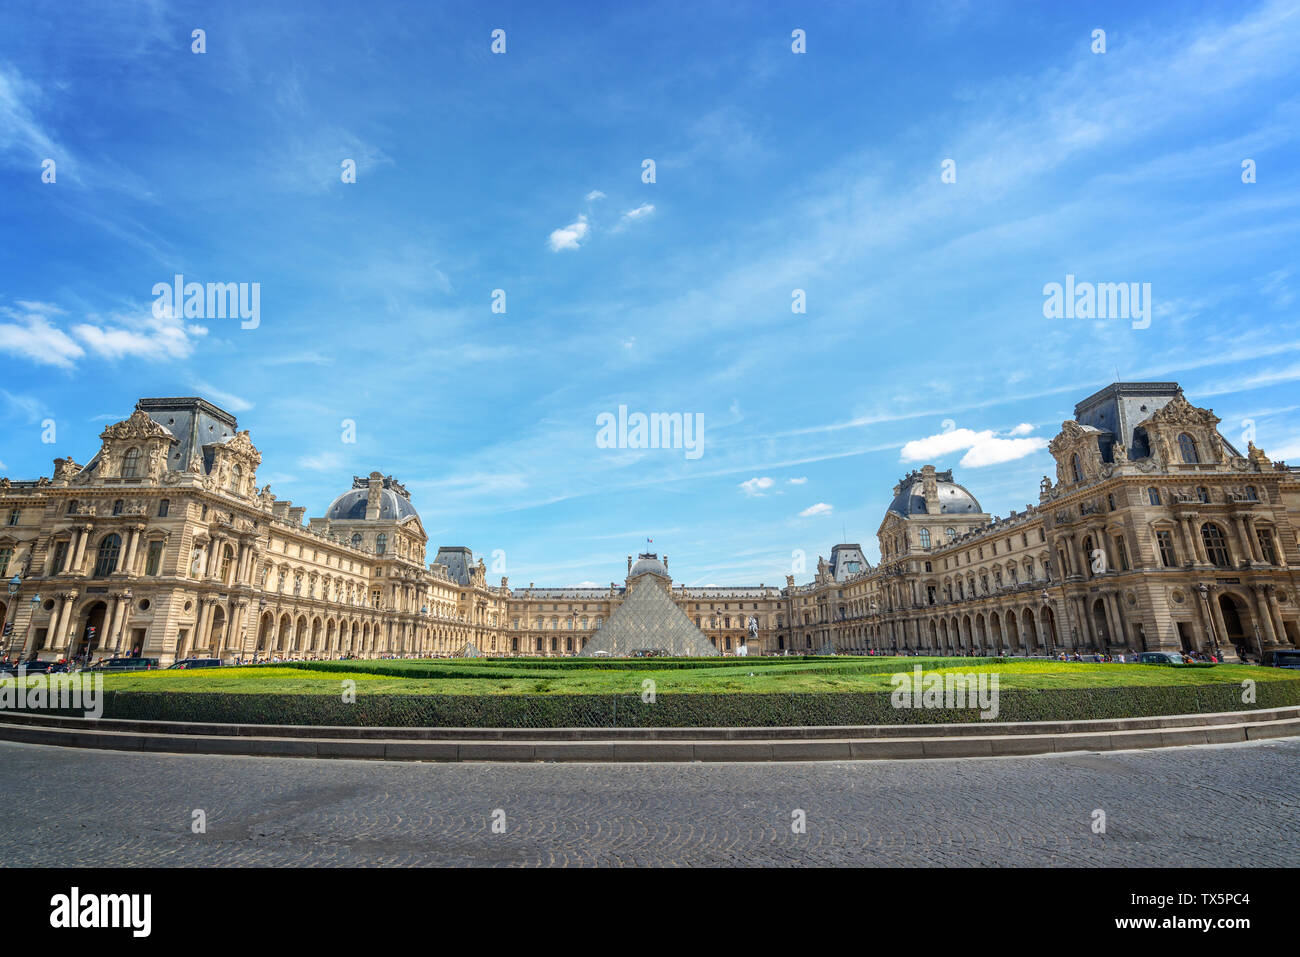 Symmetrische Blick auf den Innenhof des Louvre mit den historischen Gebäuden und die moderne Pyramide, Paris Frankreich Stockfoto